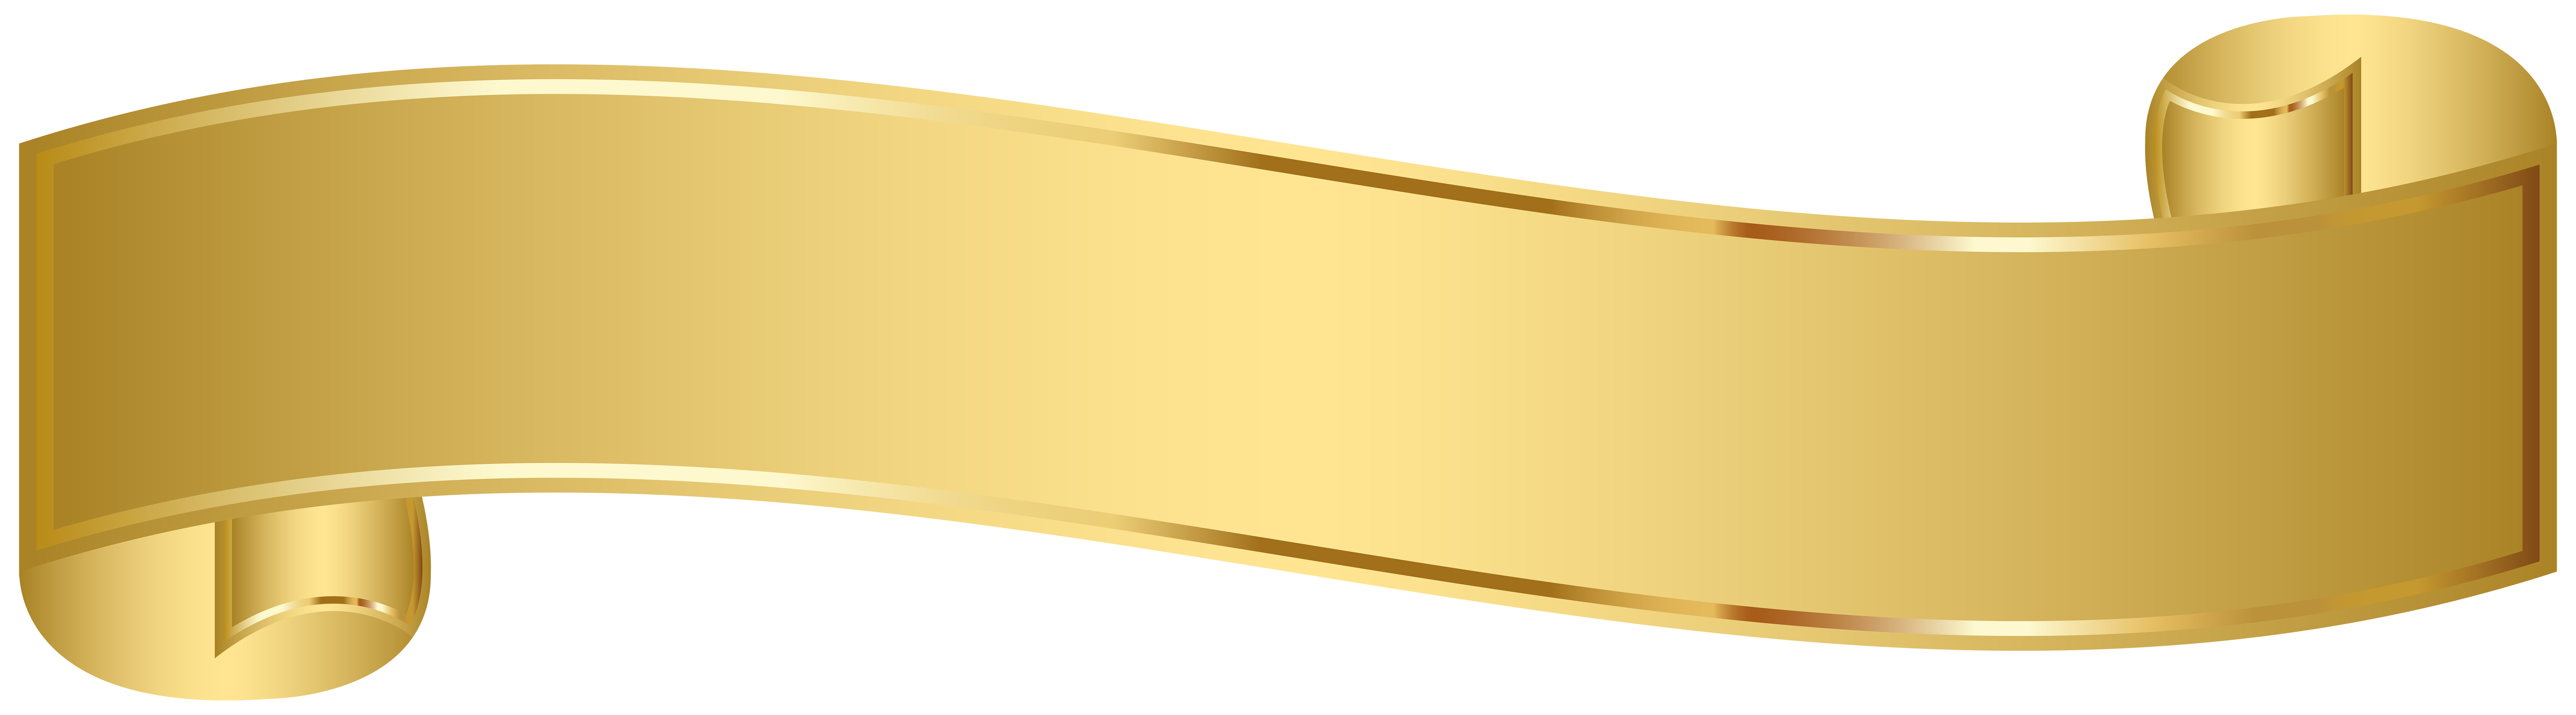 Bộ sưu tập Banner background gold chất lượng cao, dowload miễn phí